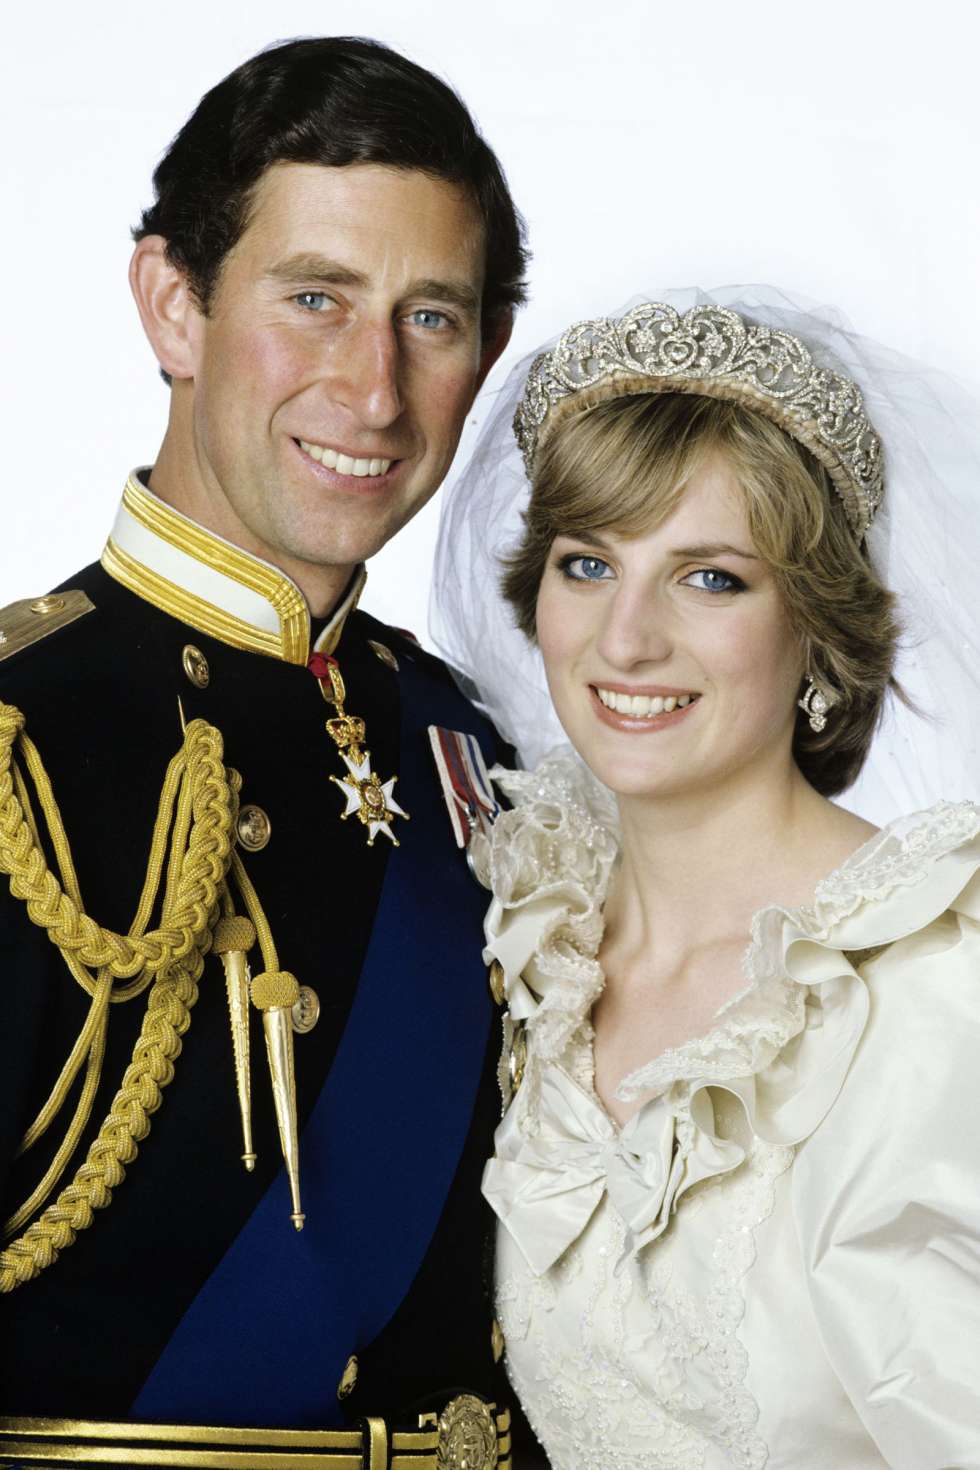 Prince Charles and Princess Diana's Royal Wedding